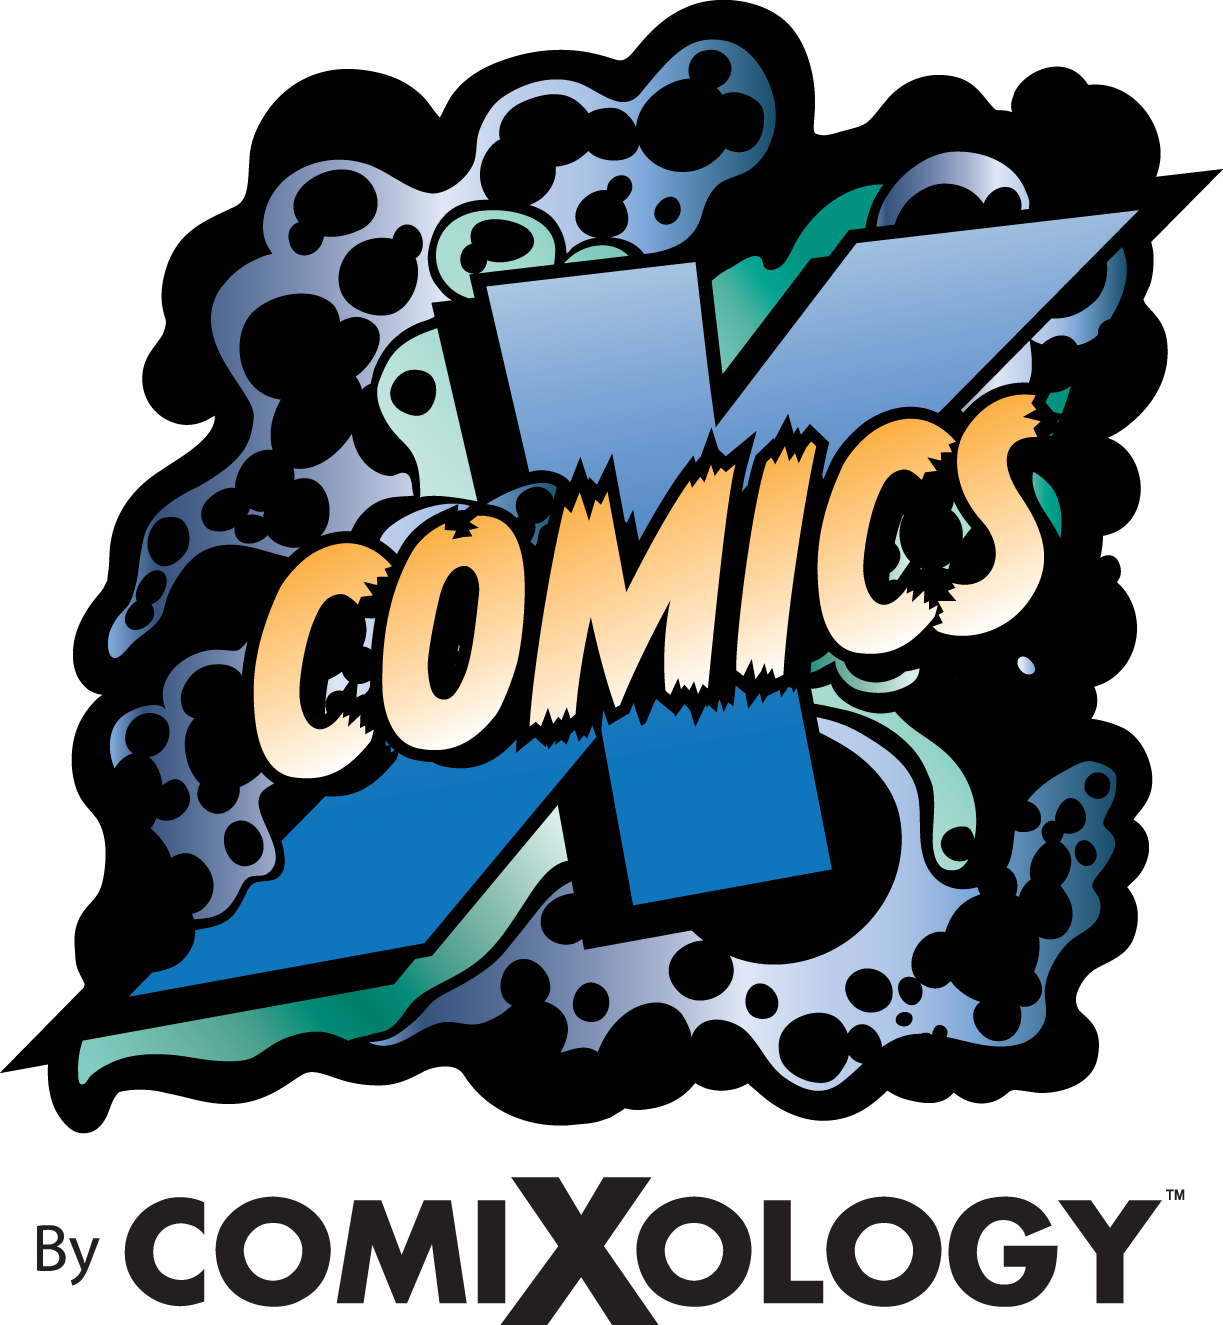 comics by comixology